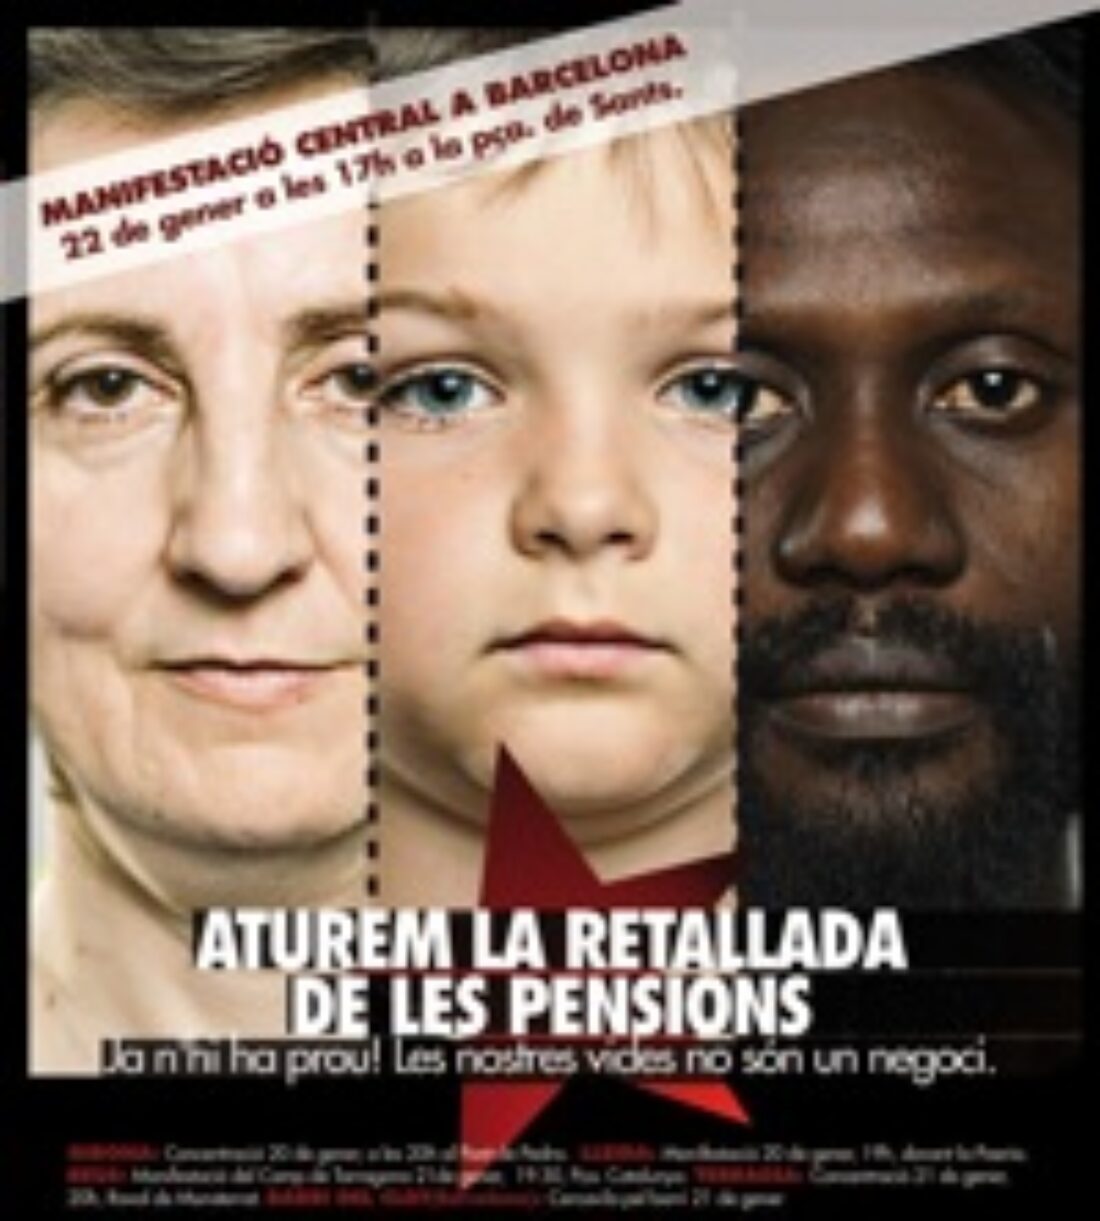 22 enero, Barcelona : Manifestación contra el recorte de las pensiones